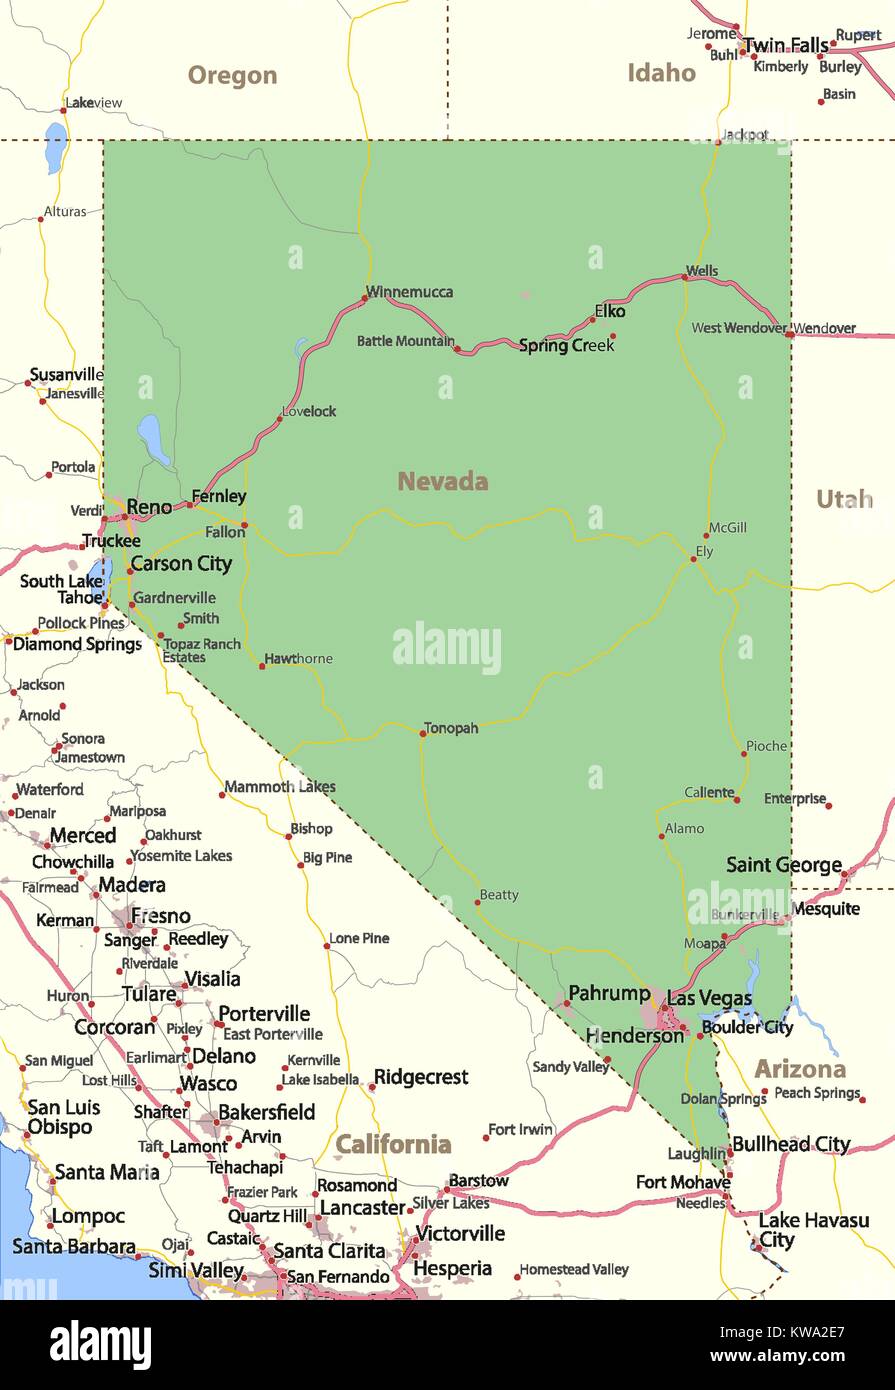 Mappa del Nevada. Mostra i confini, zone urbane, nomi di località, strade e autostrade. Proiezione: proiezione di Mercatore. Illustrazione Vettoriale